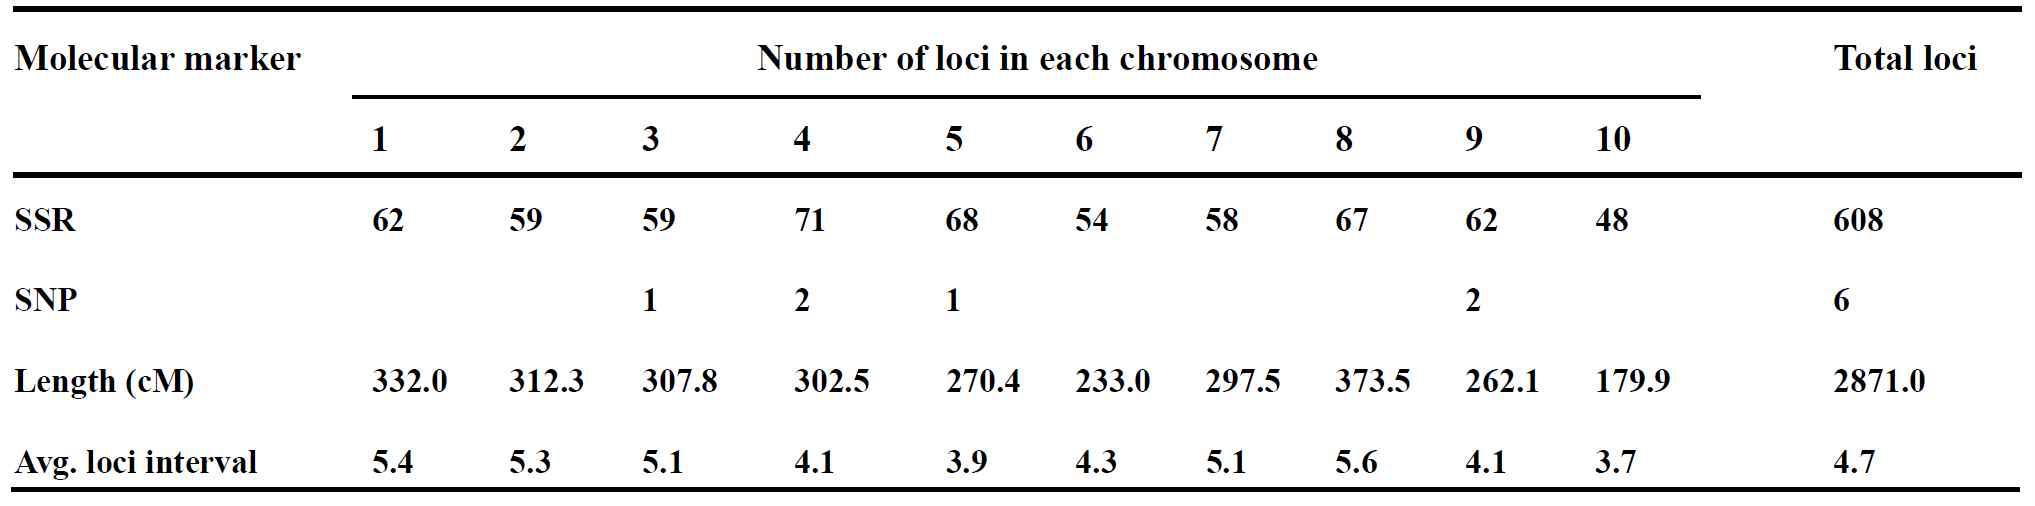 옥수수 RIL 집단에서 염색체 길이(cM) 및 염색체 당 마커 수